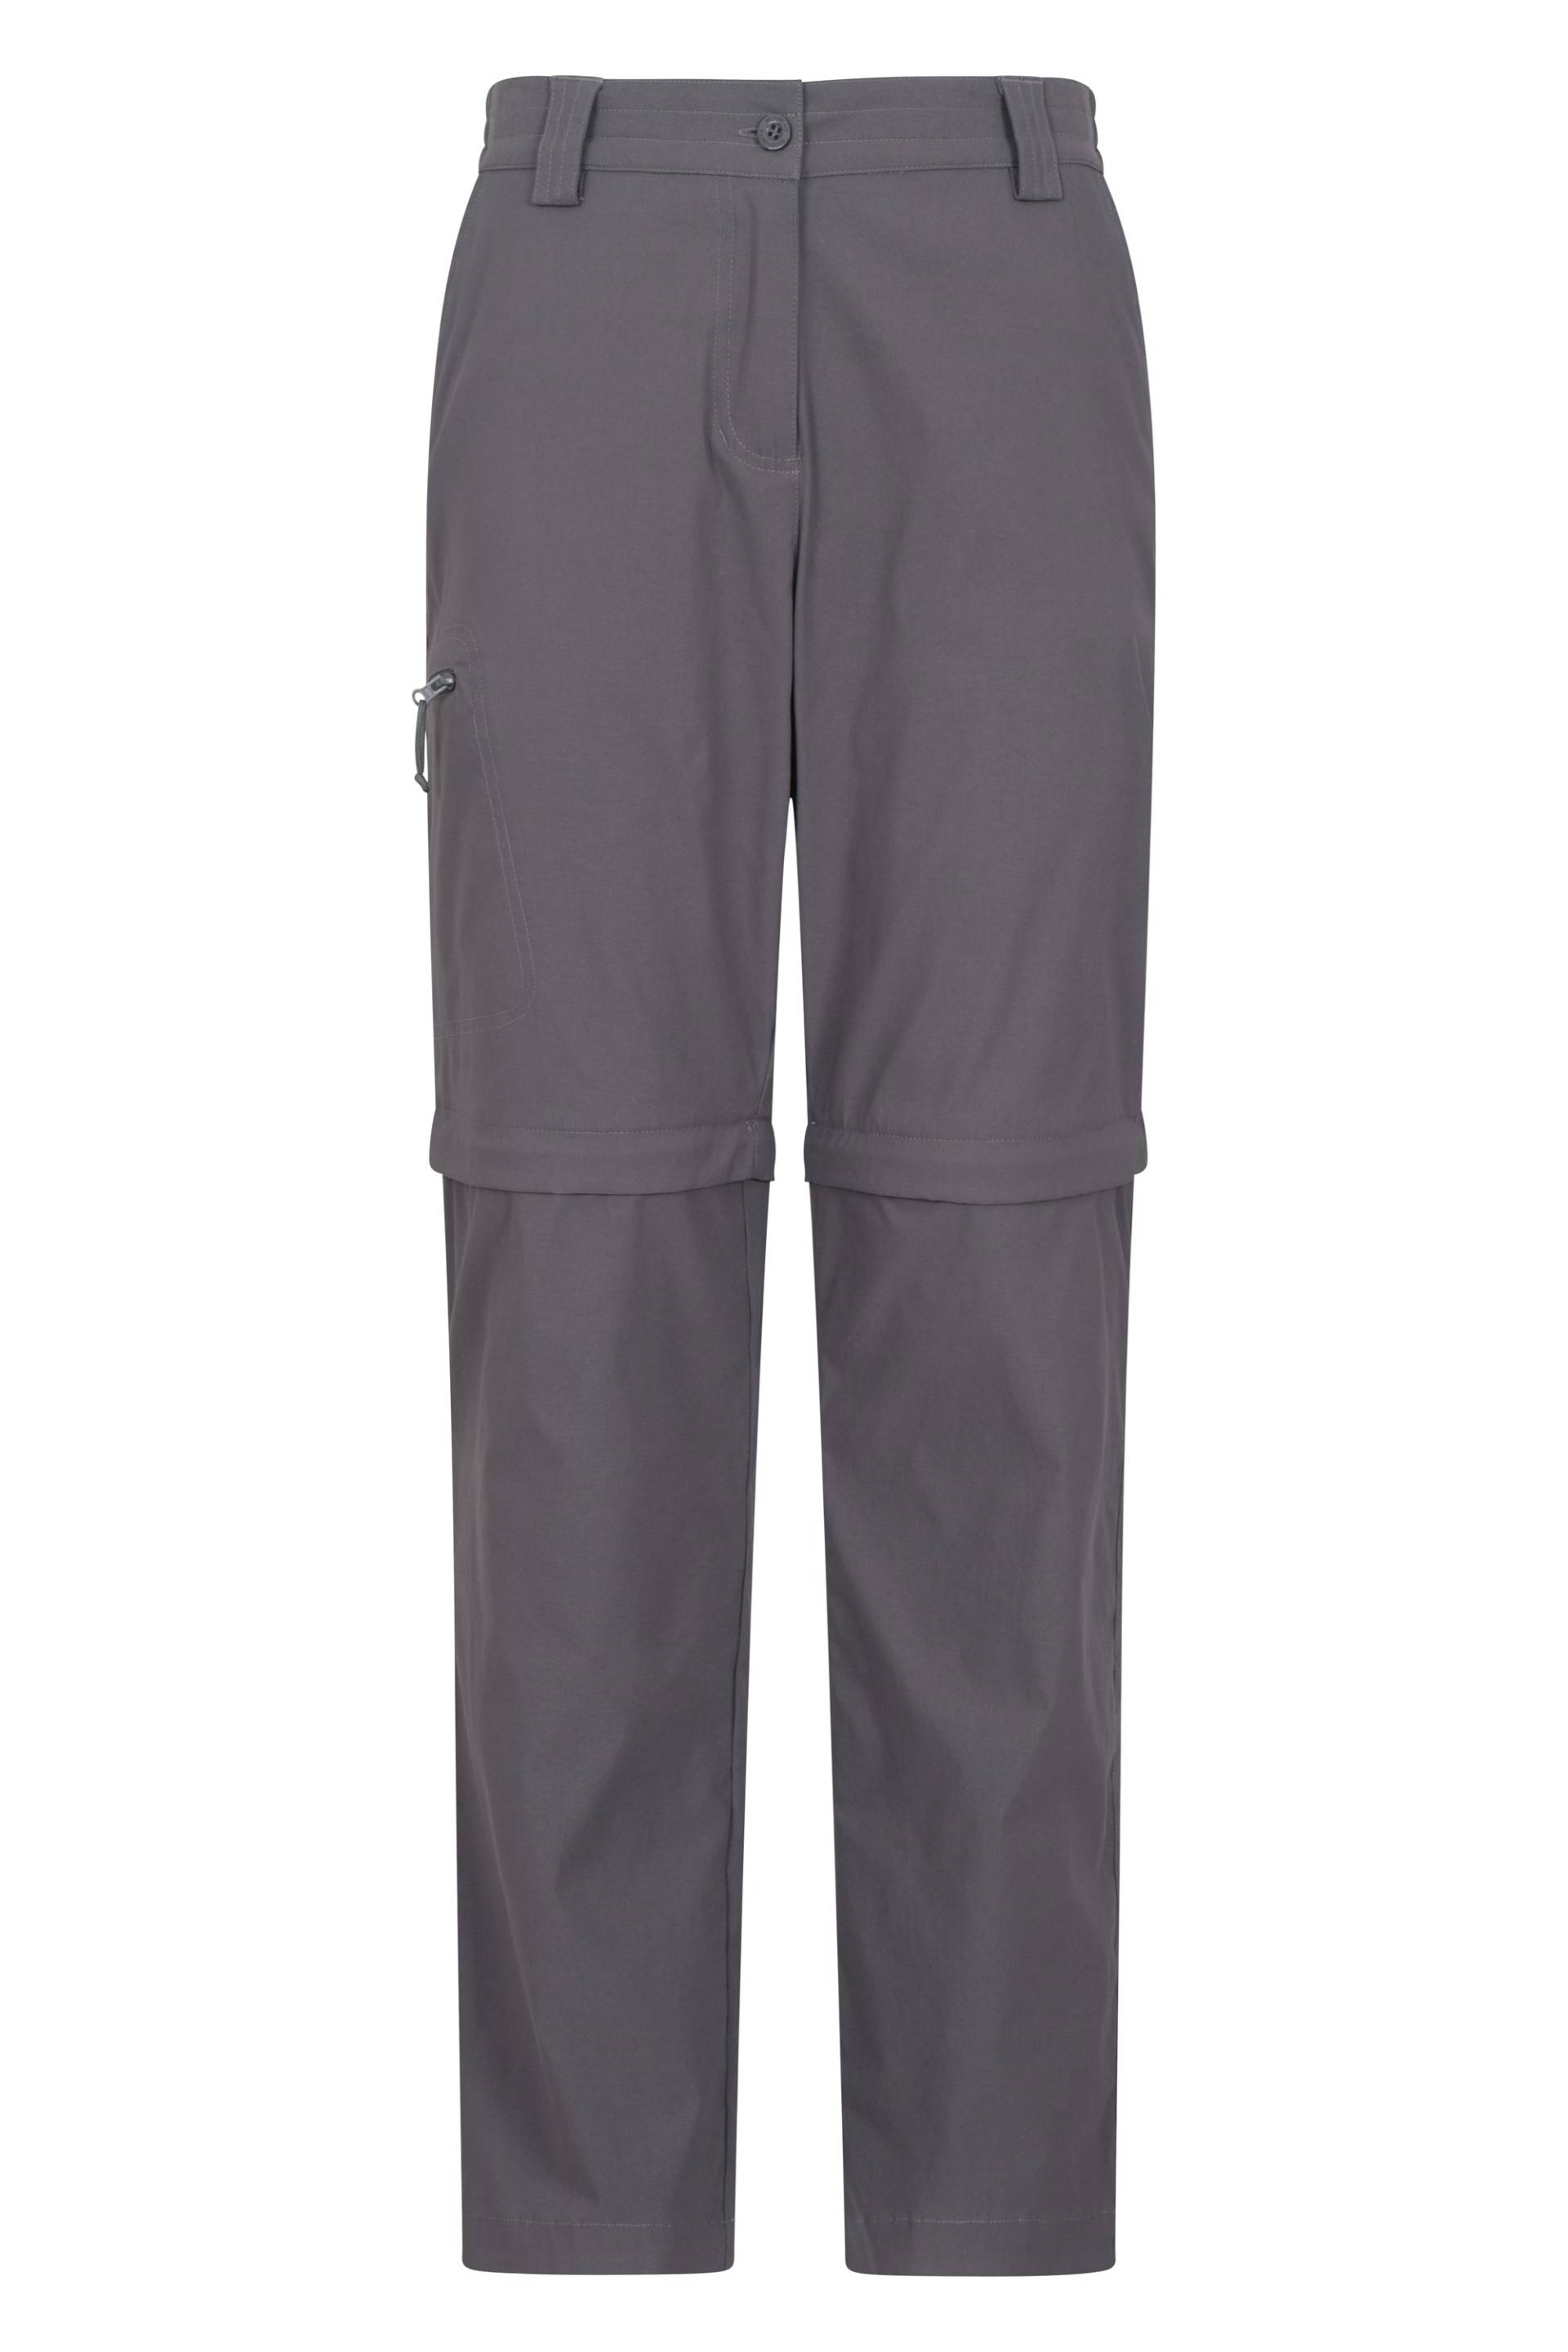 Damen-Stretchwanderhose mit Reißverschlussbeinen - Grau von Mountain Warehouse